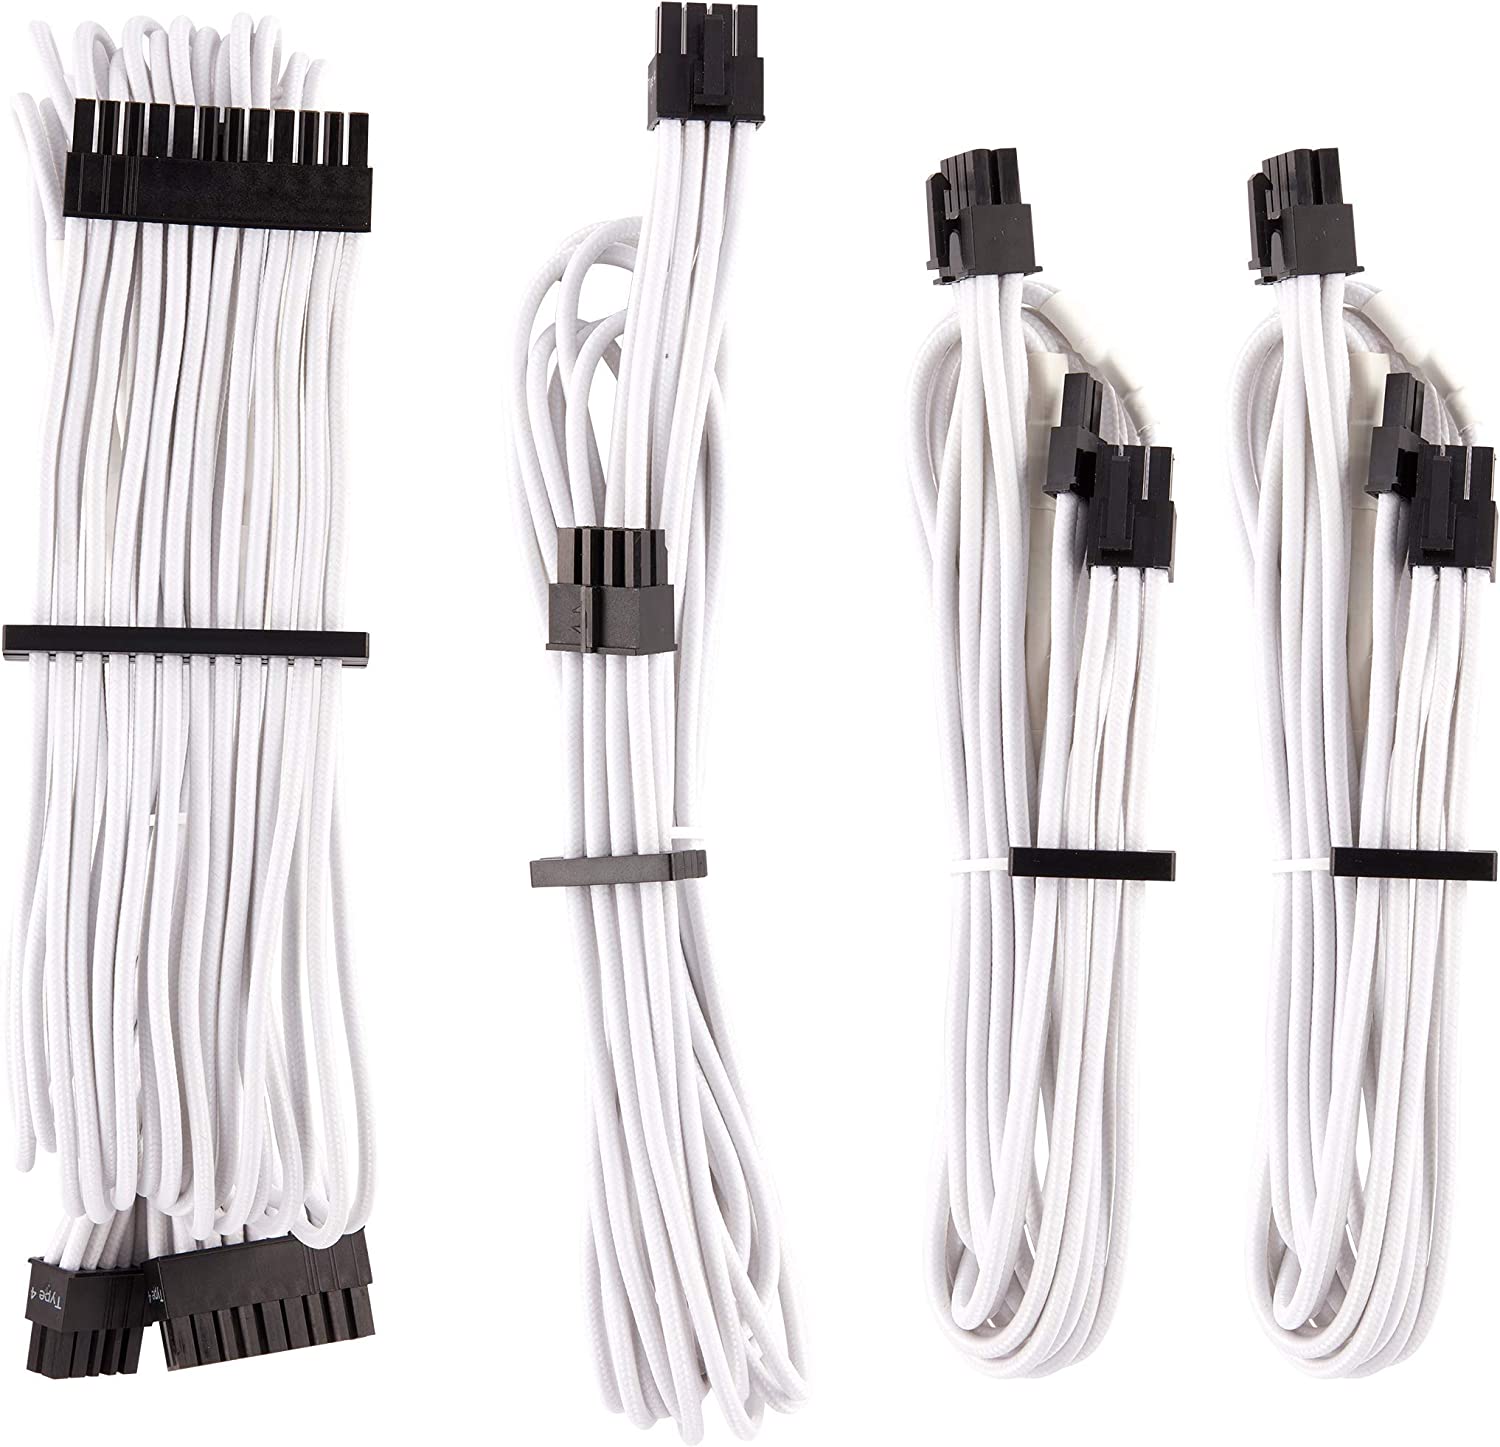 Corsair modular power supply cables. 